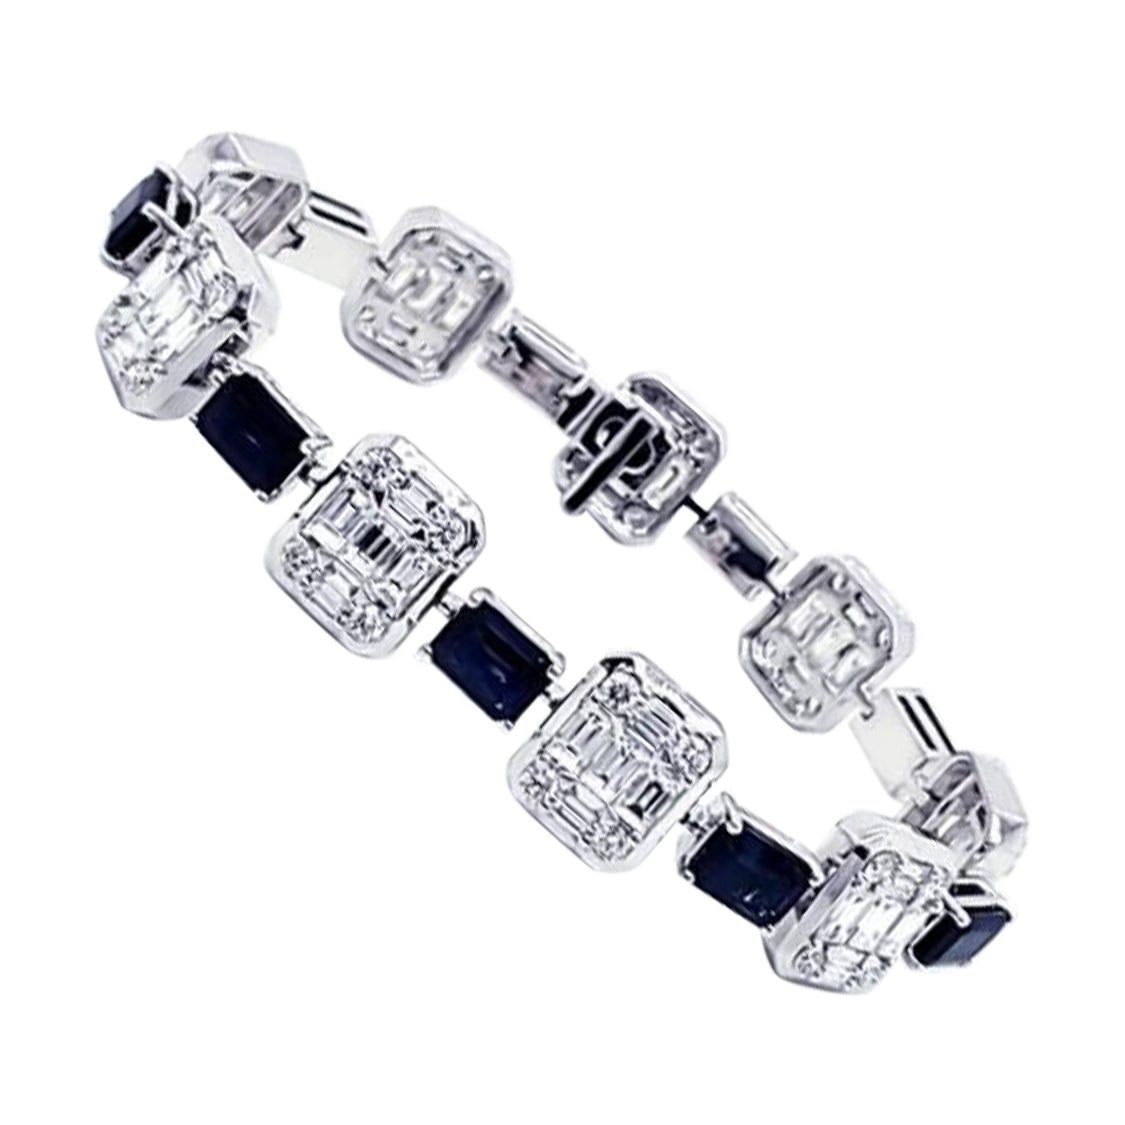 NWT $66, 818 18KT Gold Glittering Fancy Baguette Diamond Blue Sapphire Bracelet